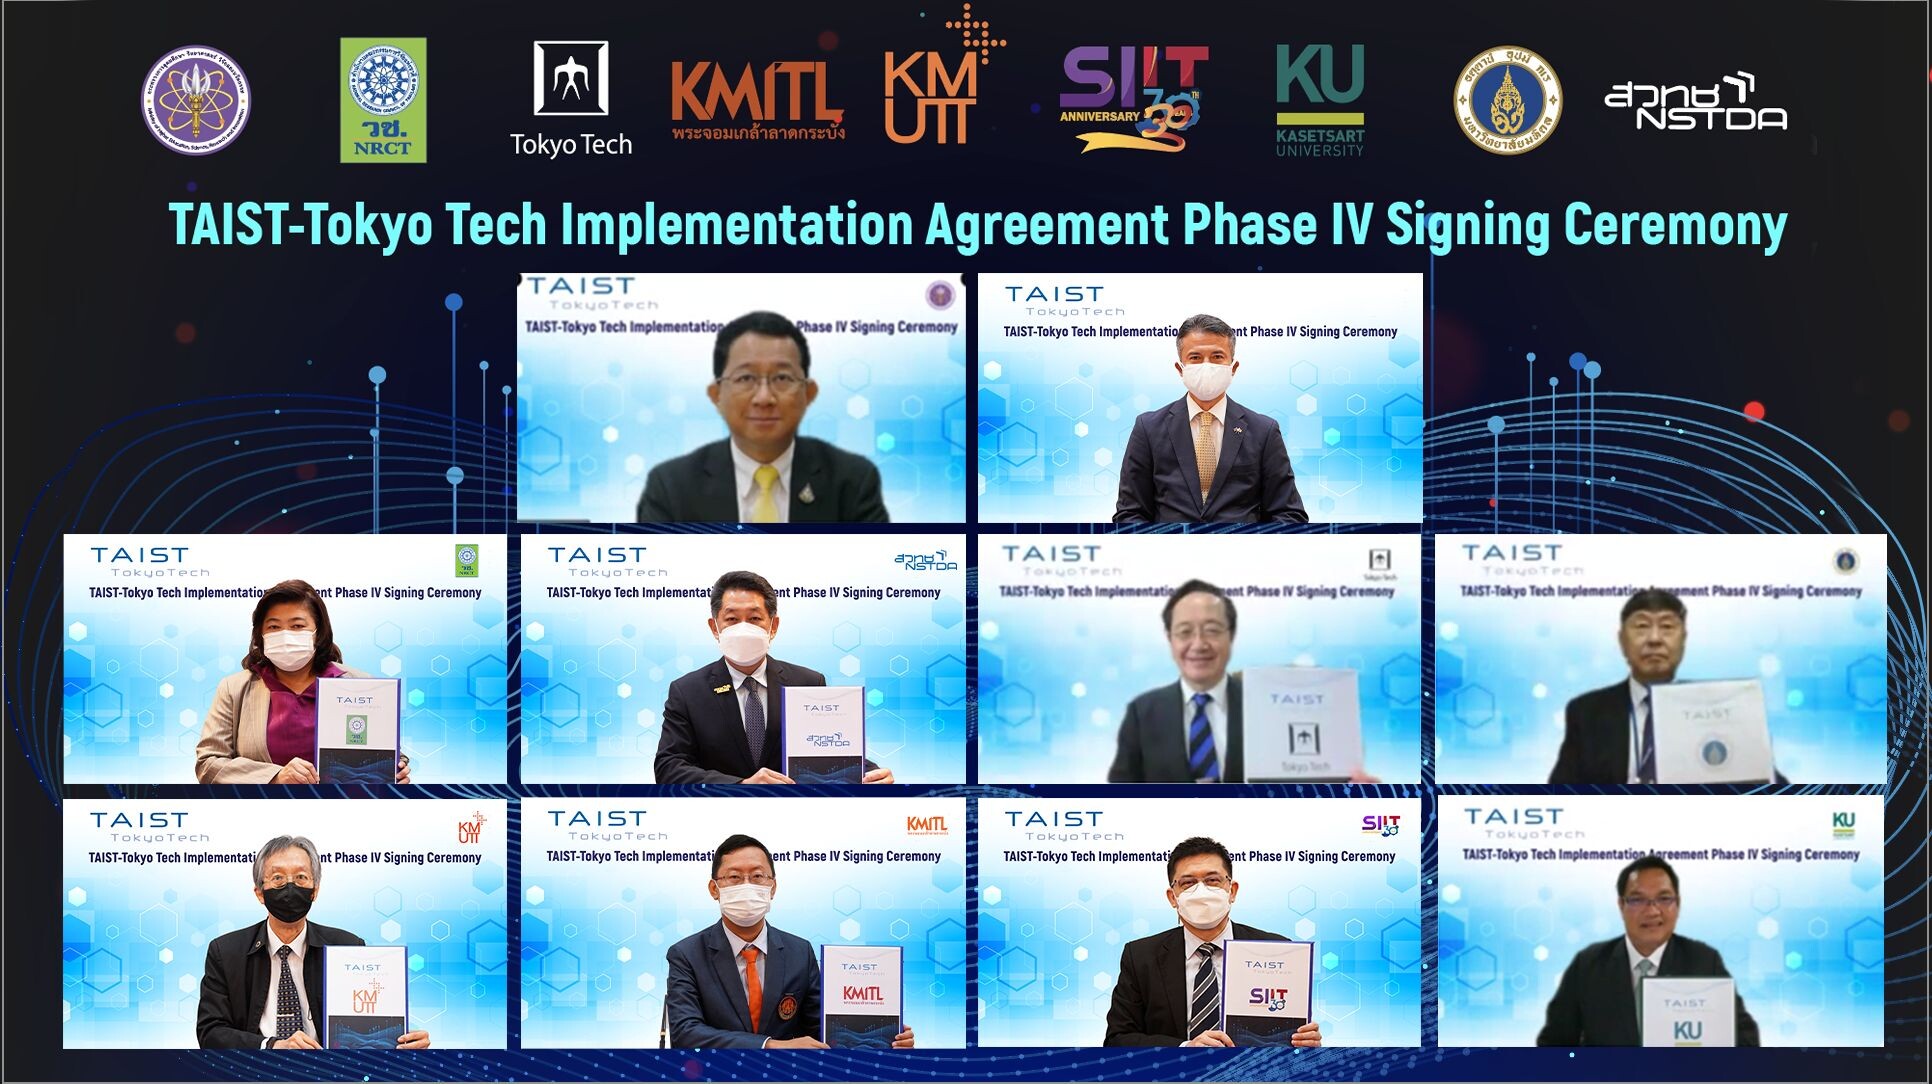 วช. ร่วมกับ 7 หน่วยงาน ลงนามข้อตกลงการดำเนินงาน "TAIST-Tokyo Tech Implementation Agreement"